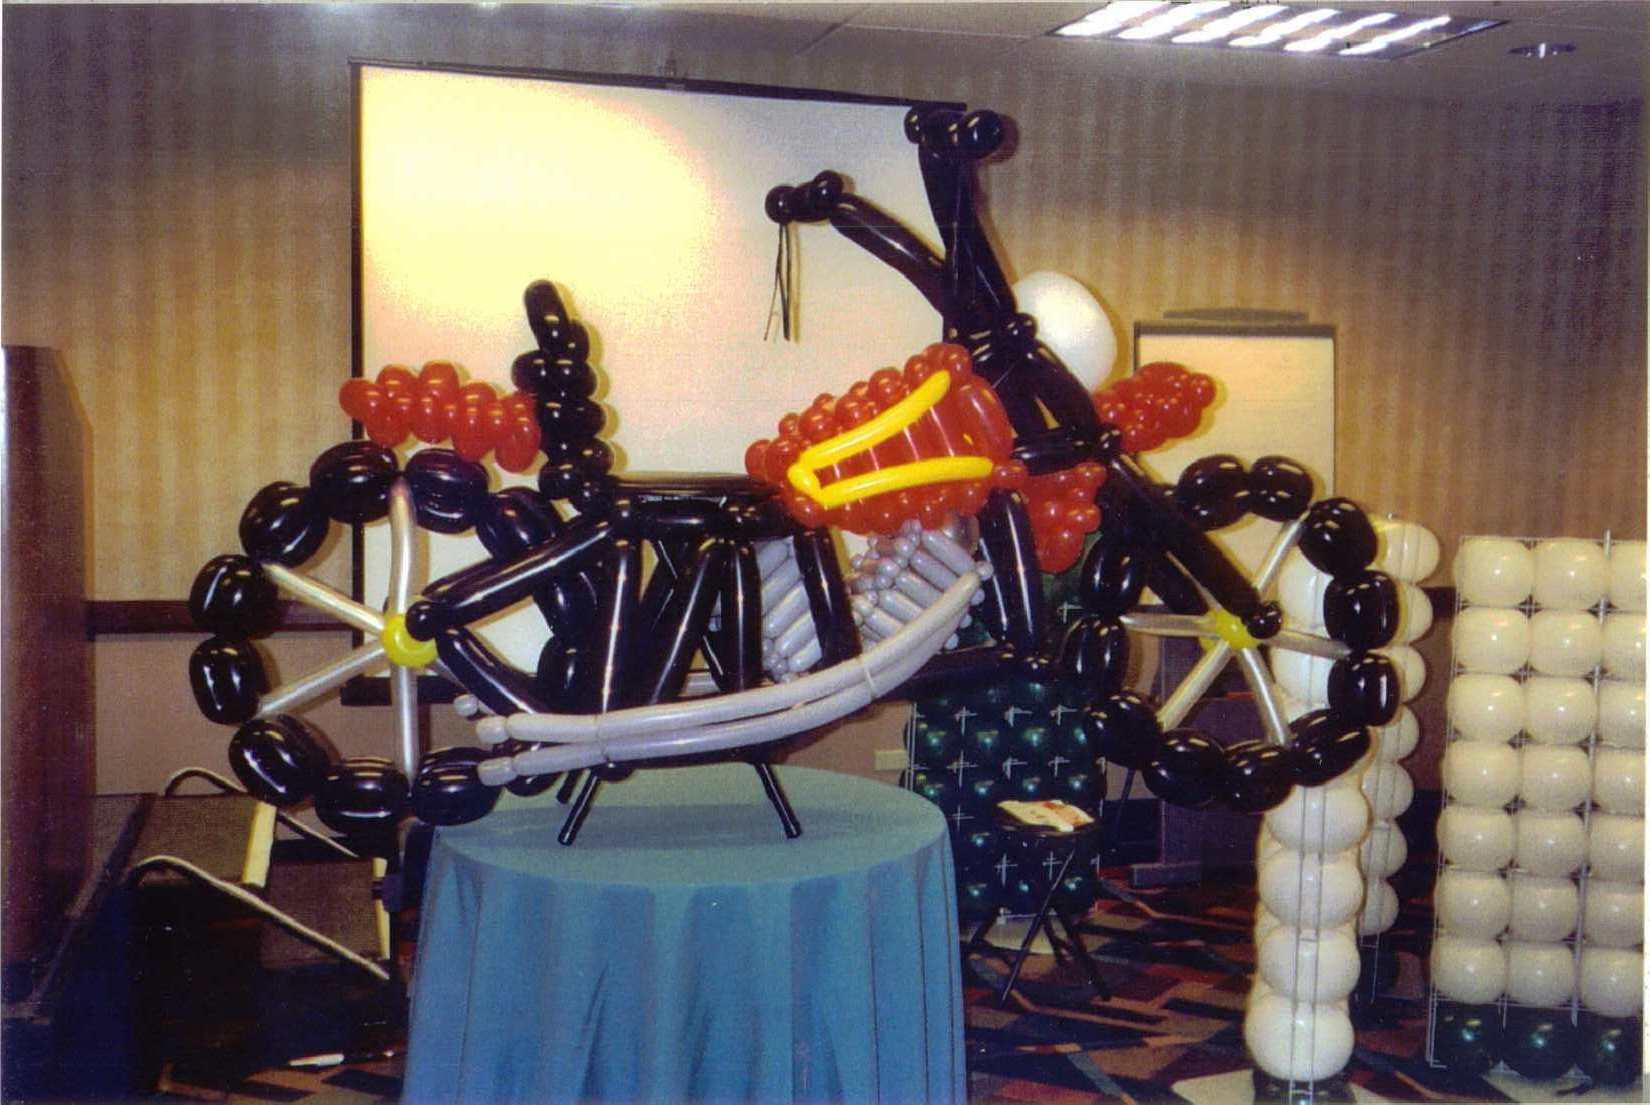 Motorcycle Balloon Sculpture